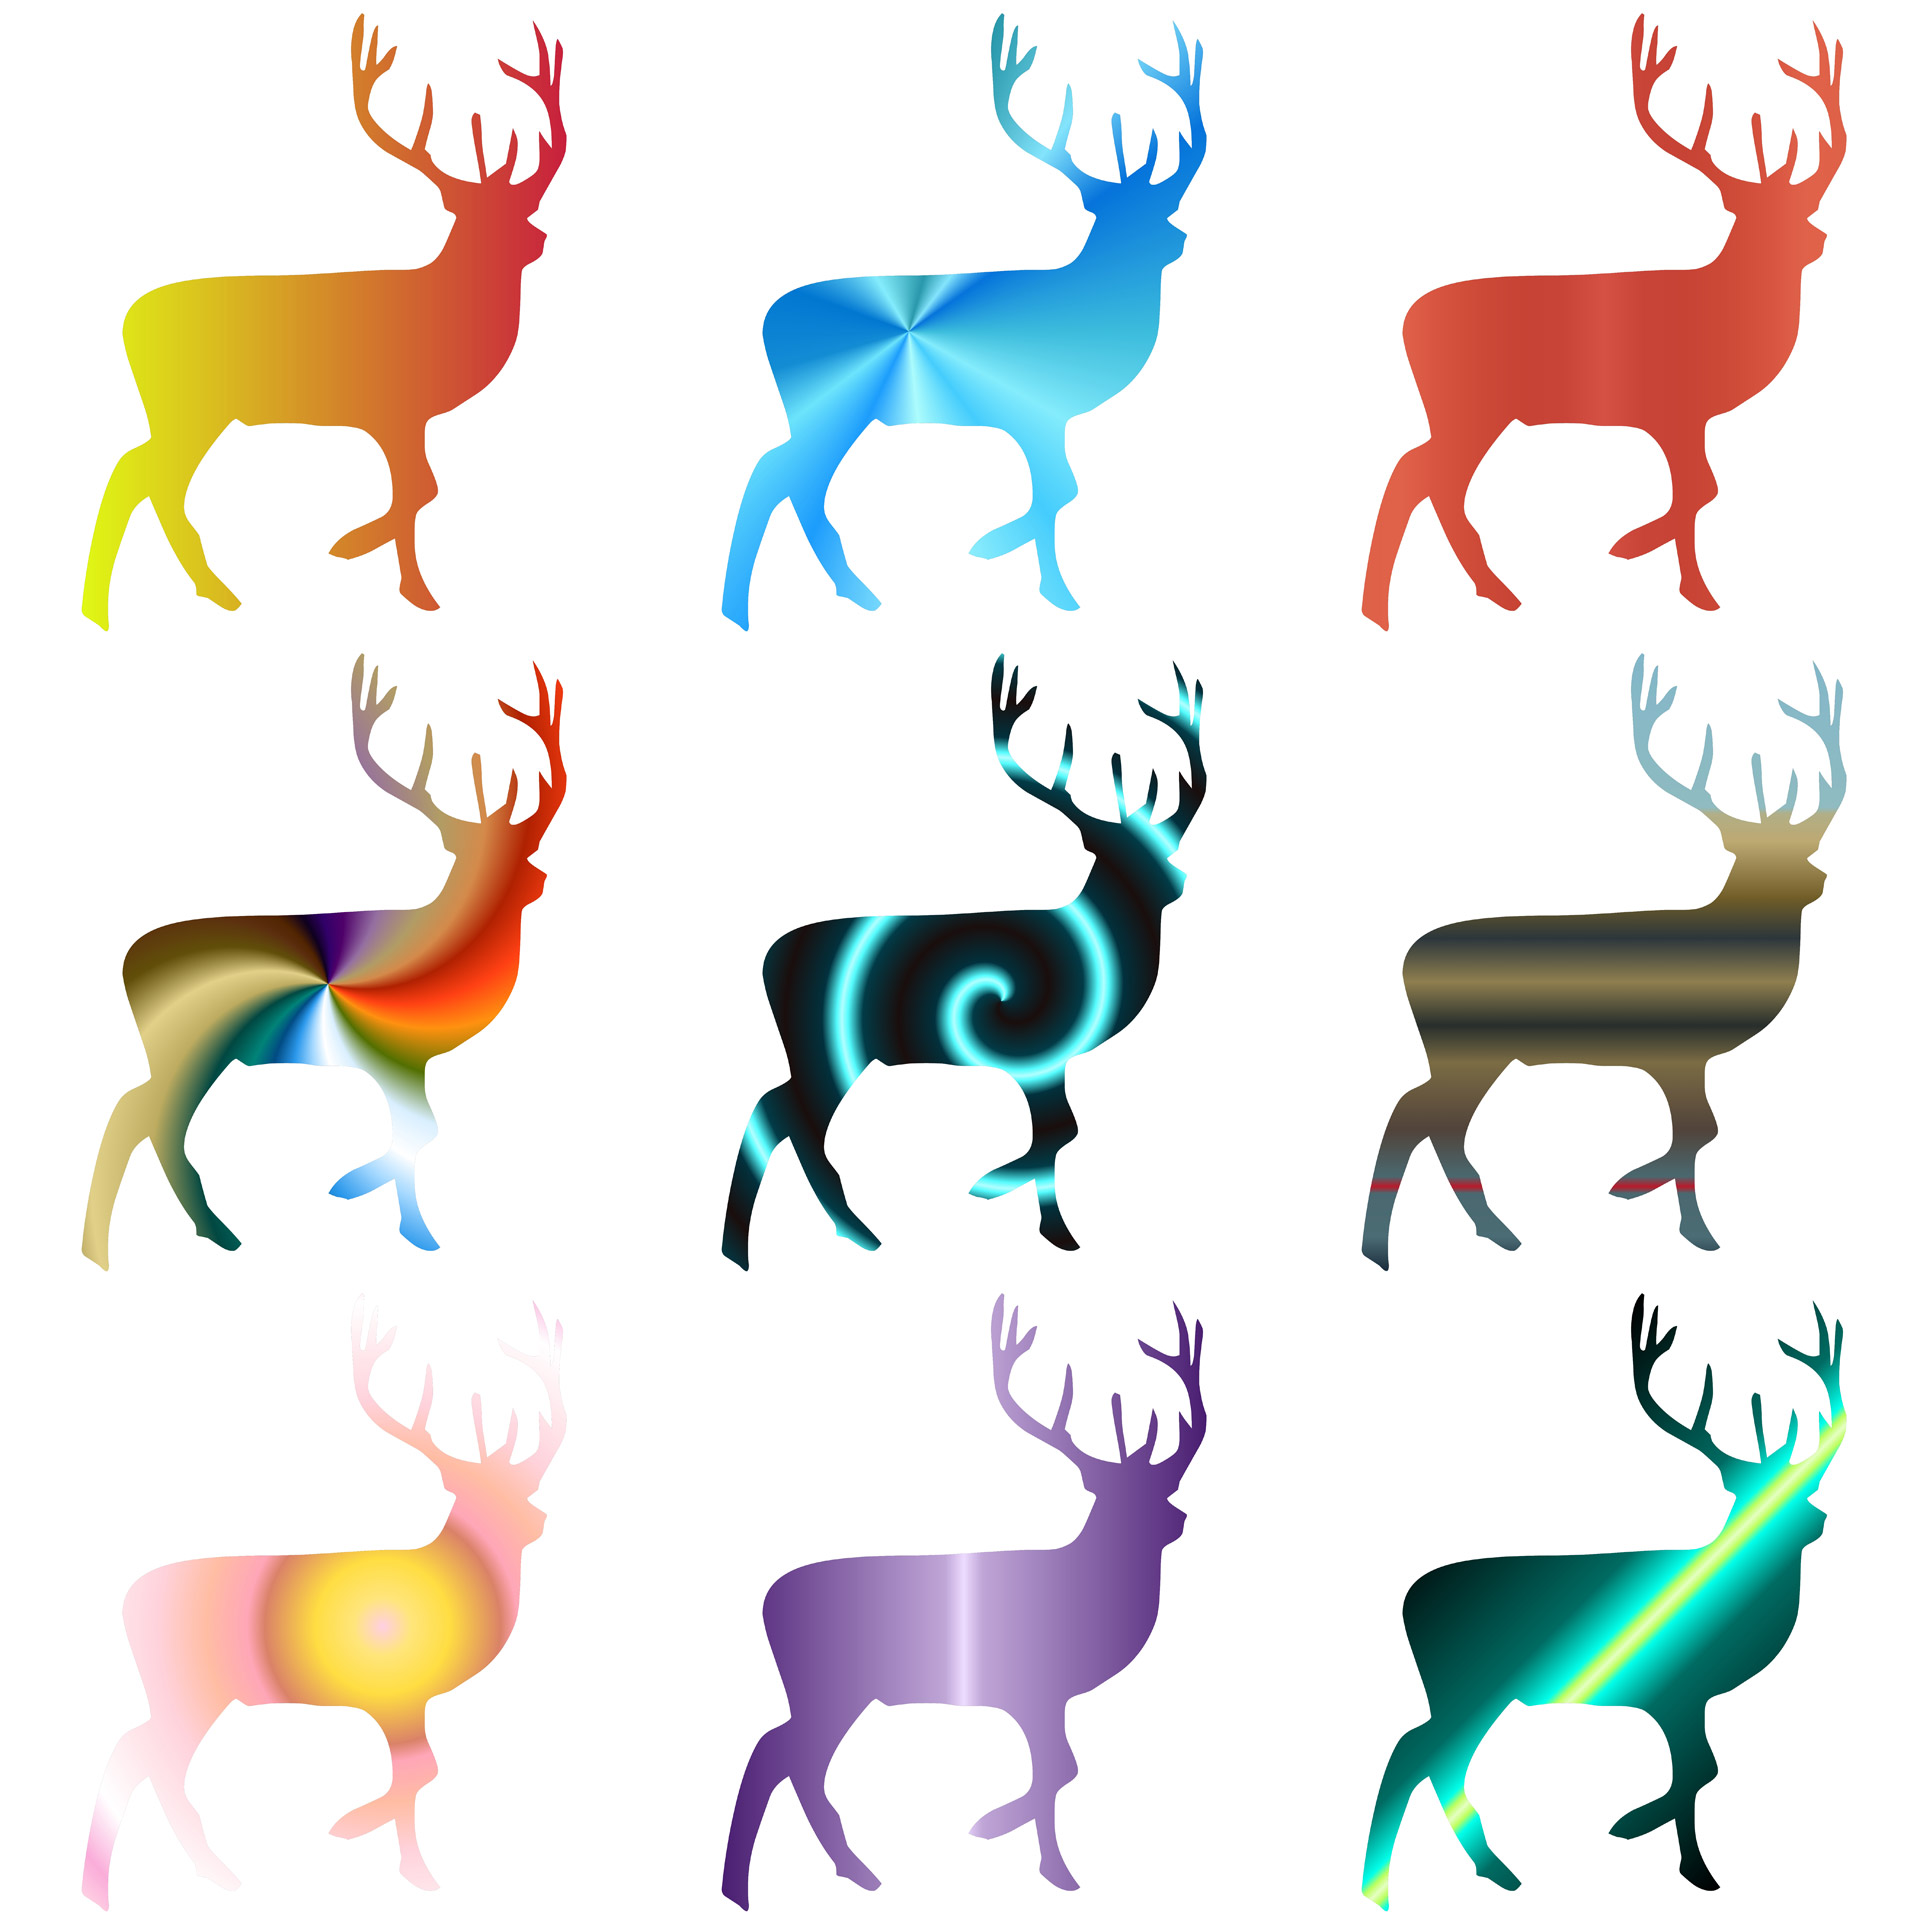 Drawing of 9 deers in colors